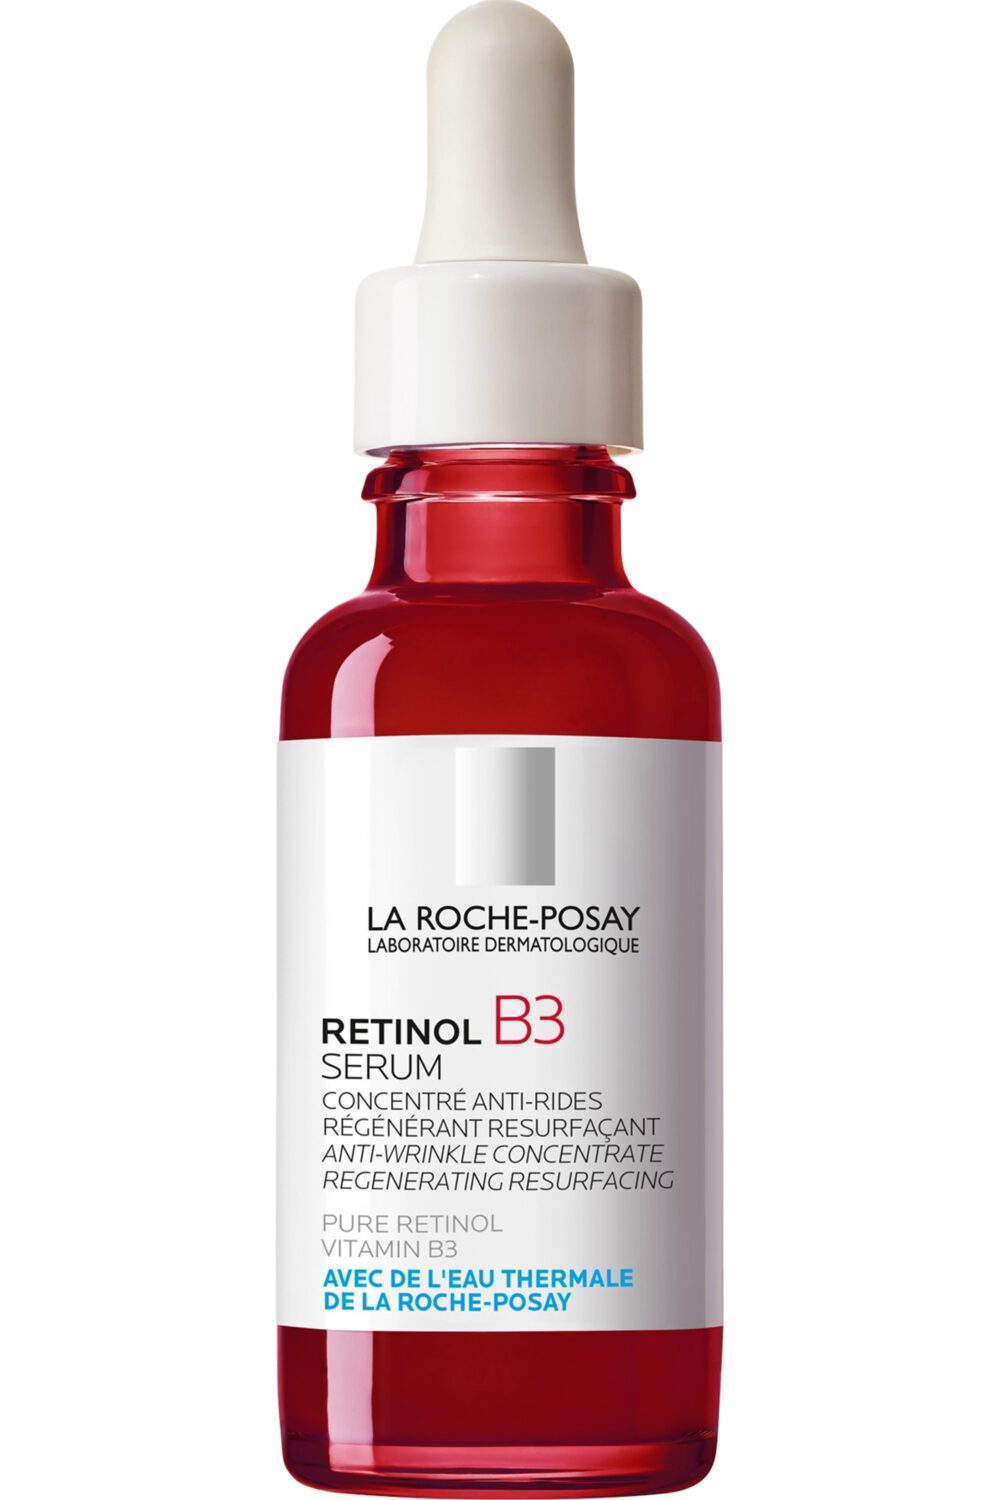 La Roche-Posay - Sérum visage anti-rides régénérant resurfaçant Retinol B3